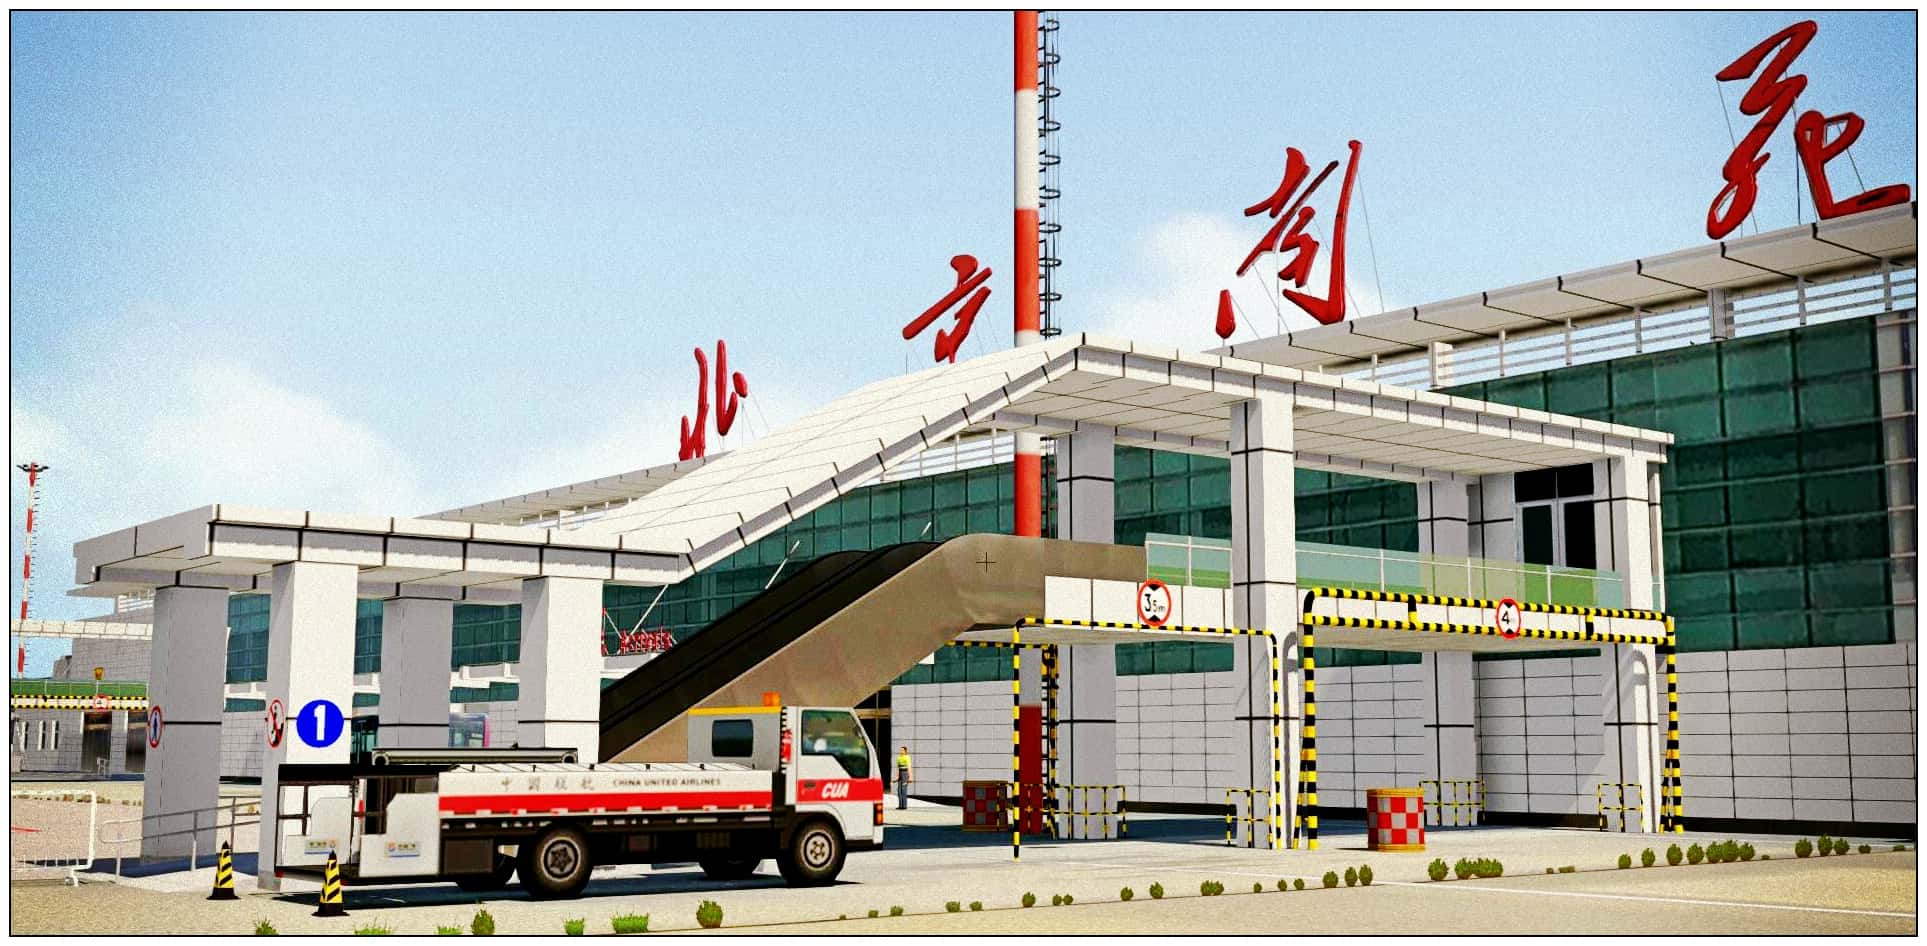 【星图地景】北京南苑机场ZBNY 正式发布-9066 